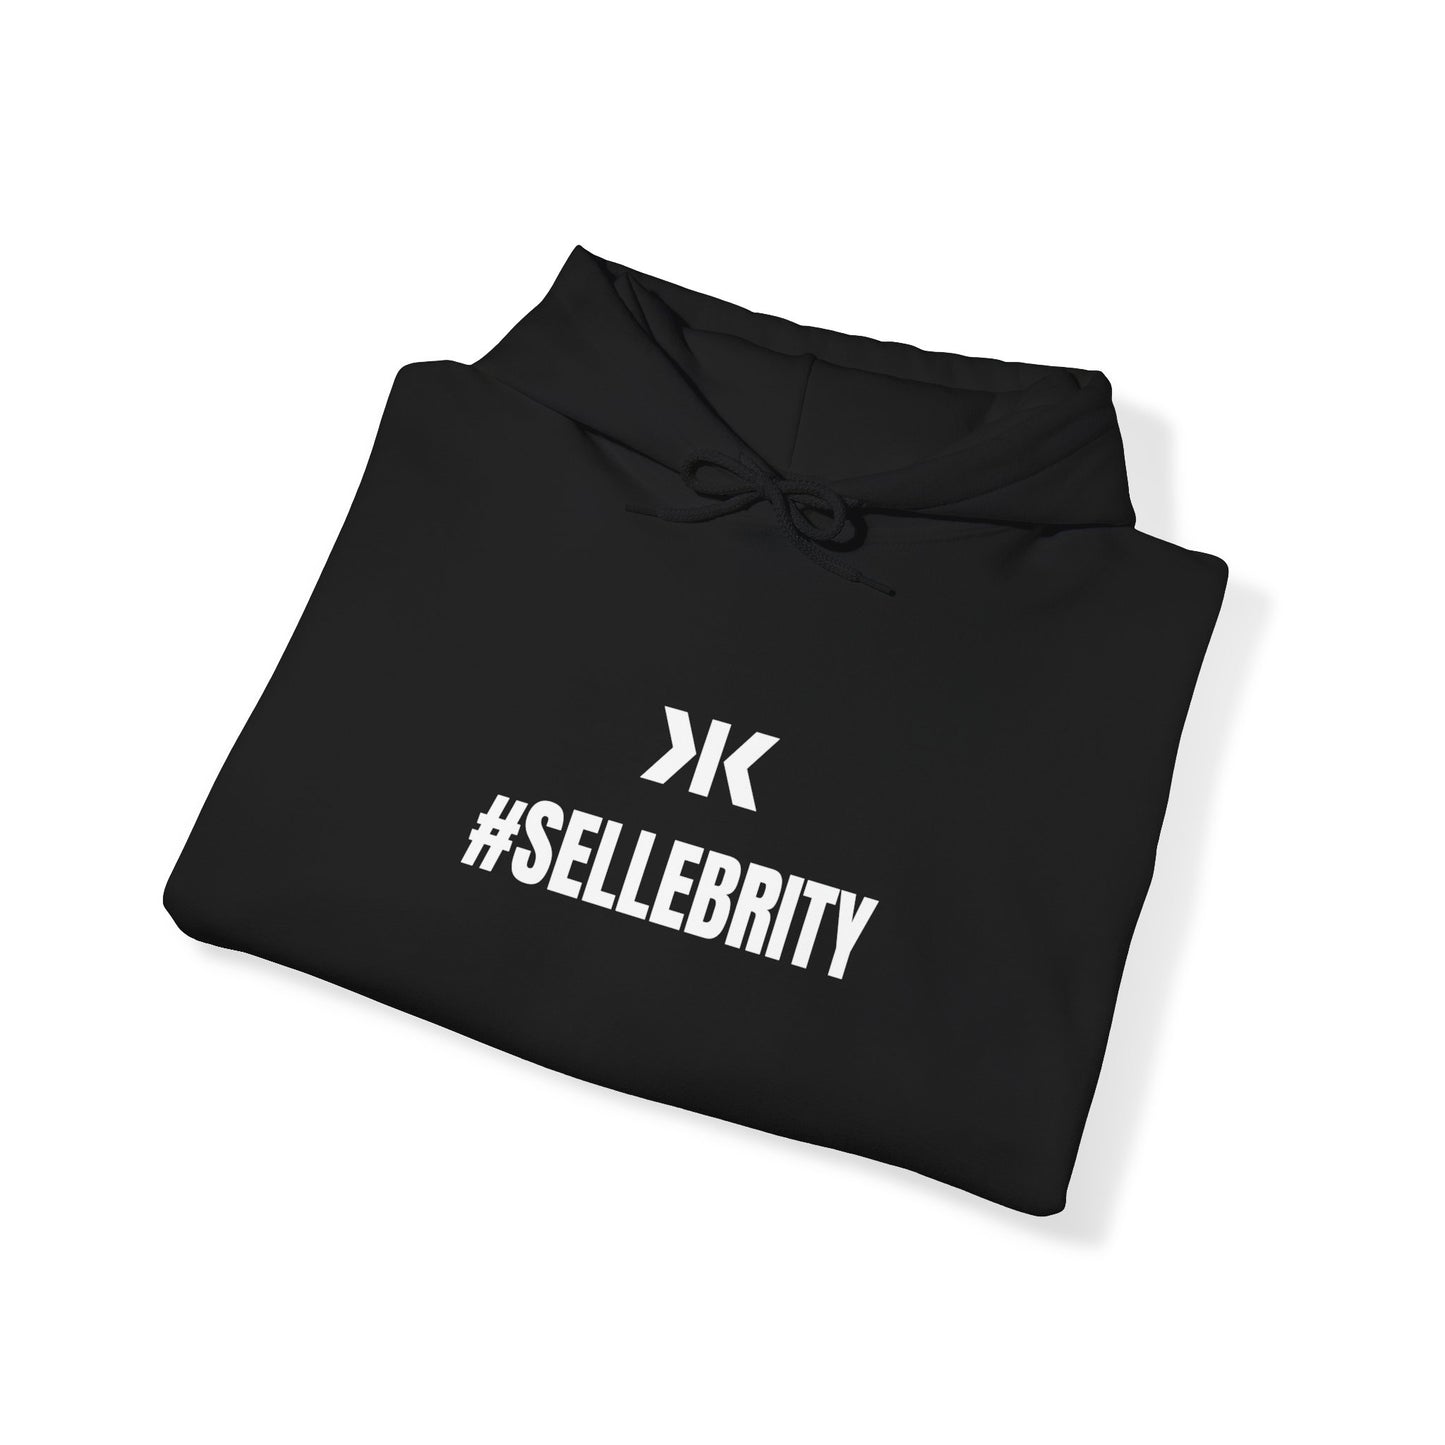 "#SELLEBRITY" Hoodie! - Unisex Heavy Blend™ Hooded Sweatshirt